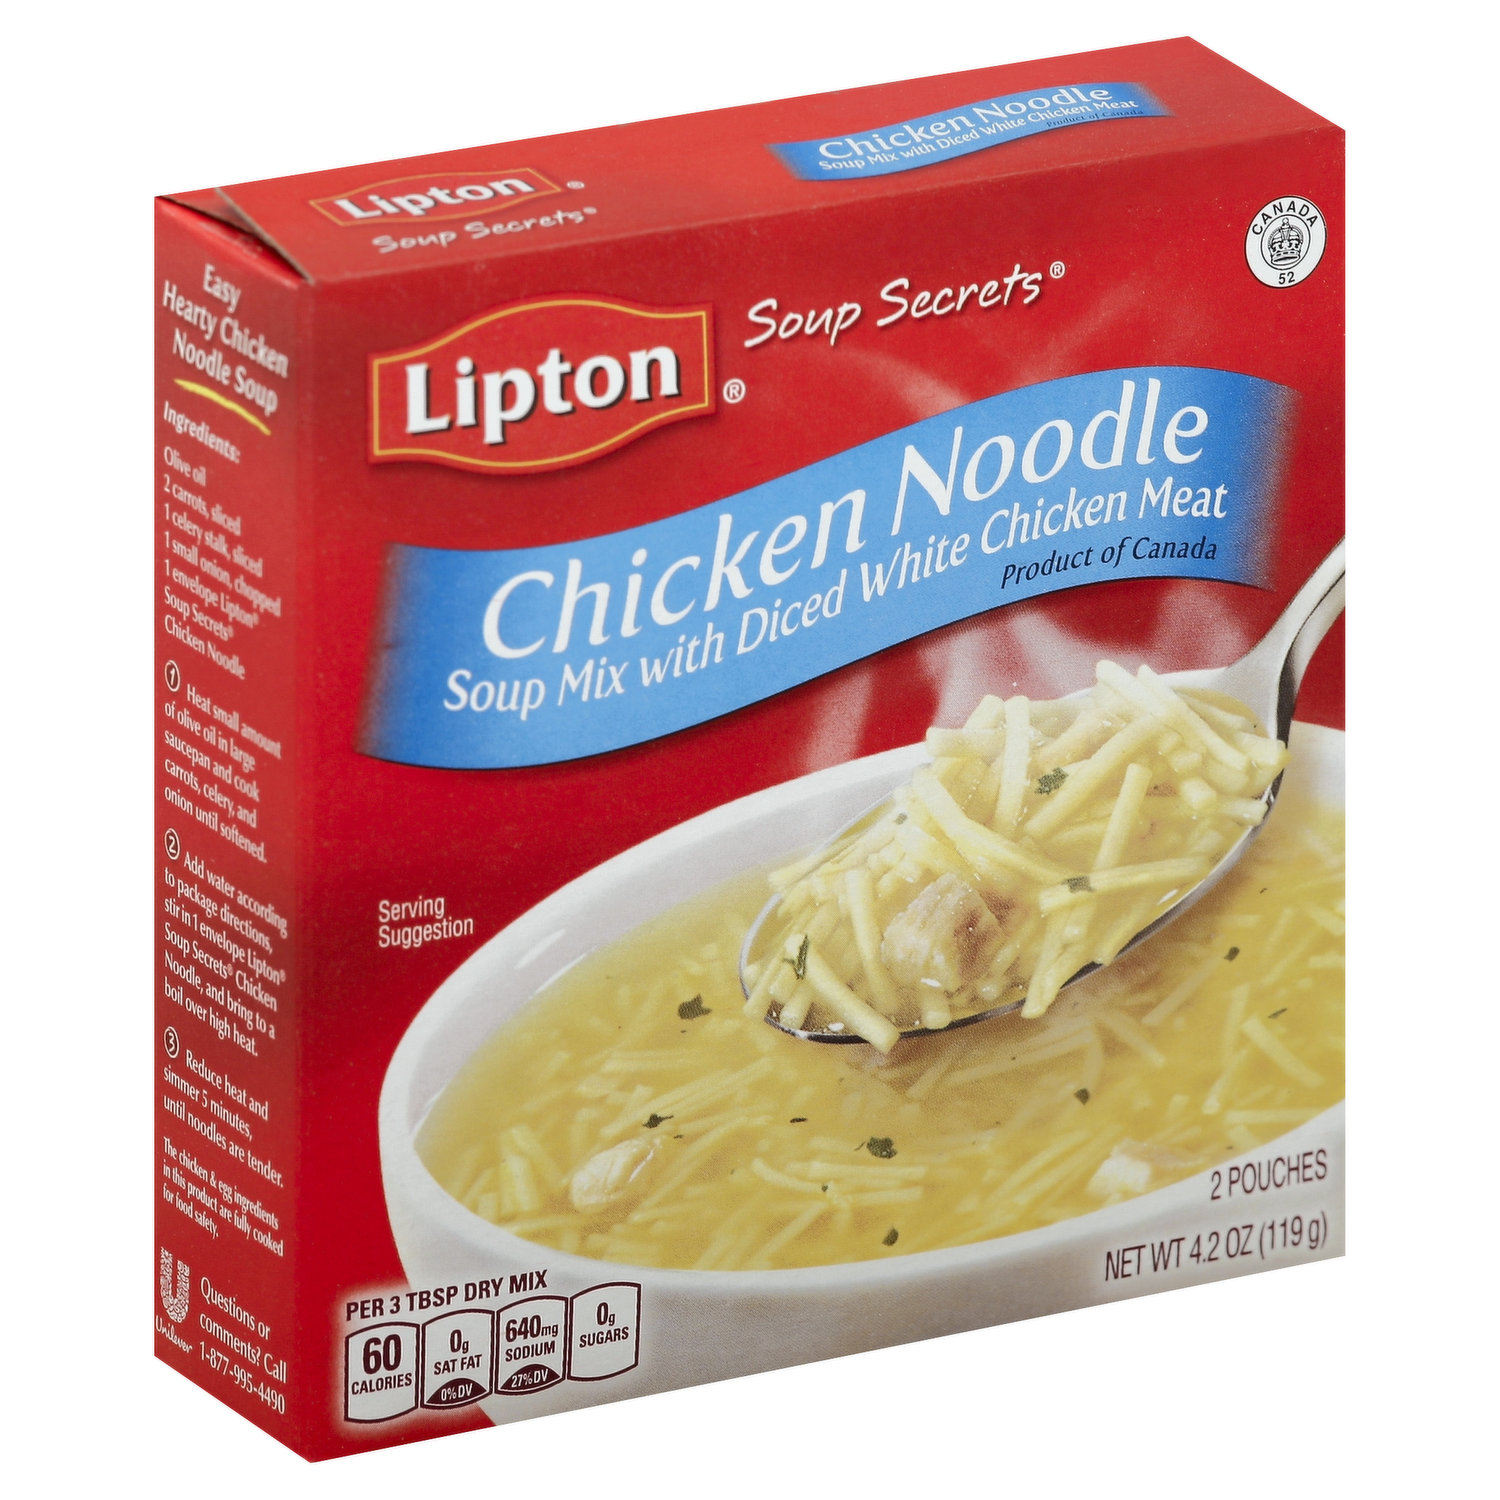 Lipton Soup Secrets Chicken Noodle Soup Mix Case